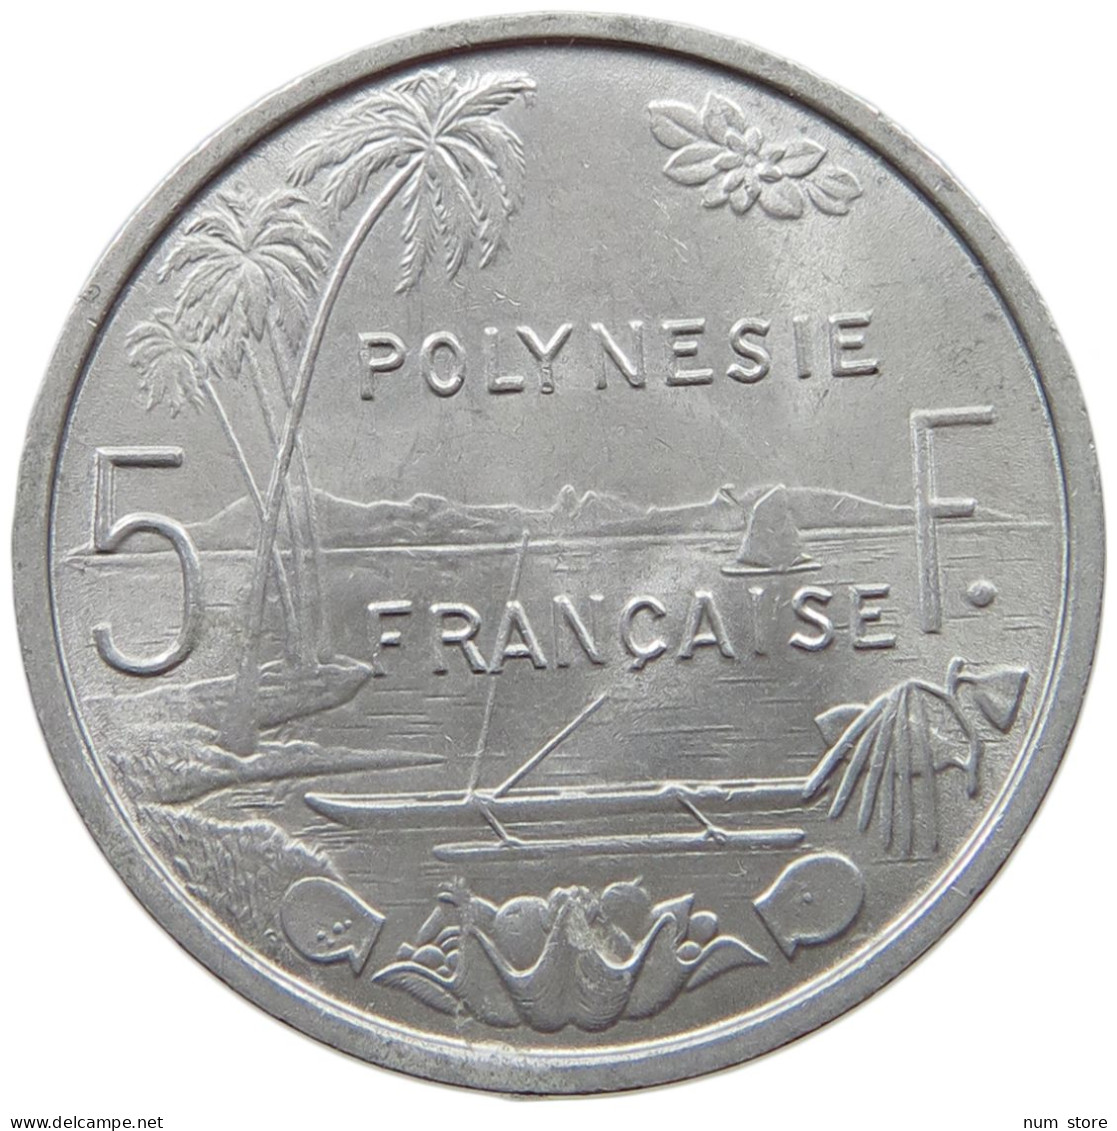 POLYNESIA 5 FRANCS 1975  #a021 1119 - French Polynesia